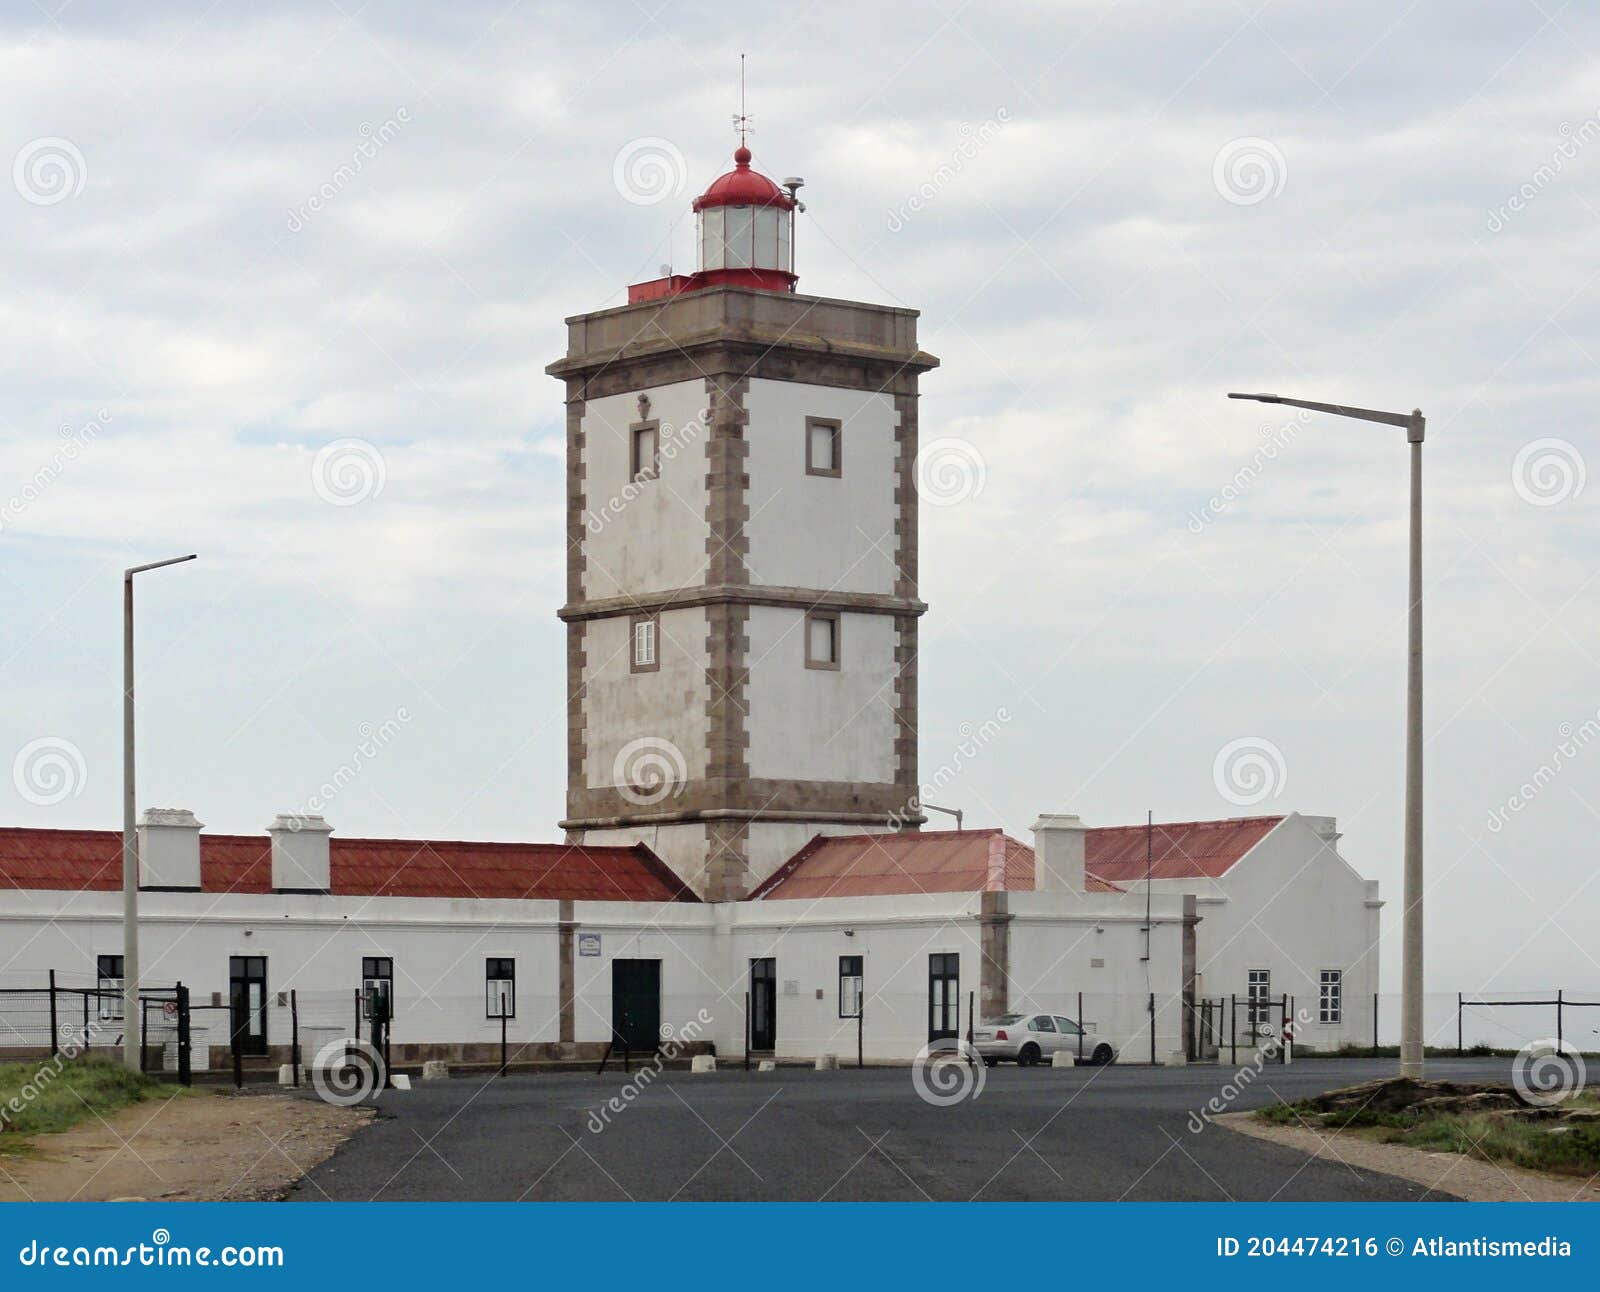 cabo cavoeiro lighthouse in peniche, centro - portugal